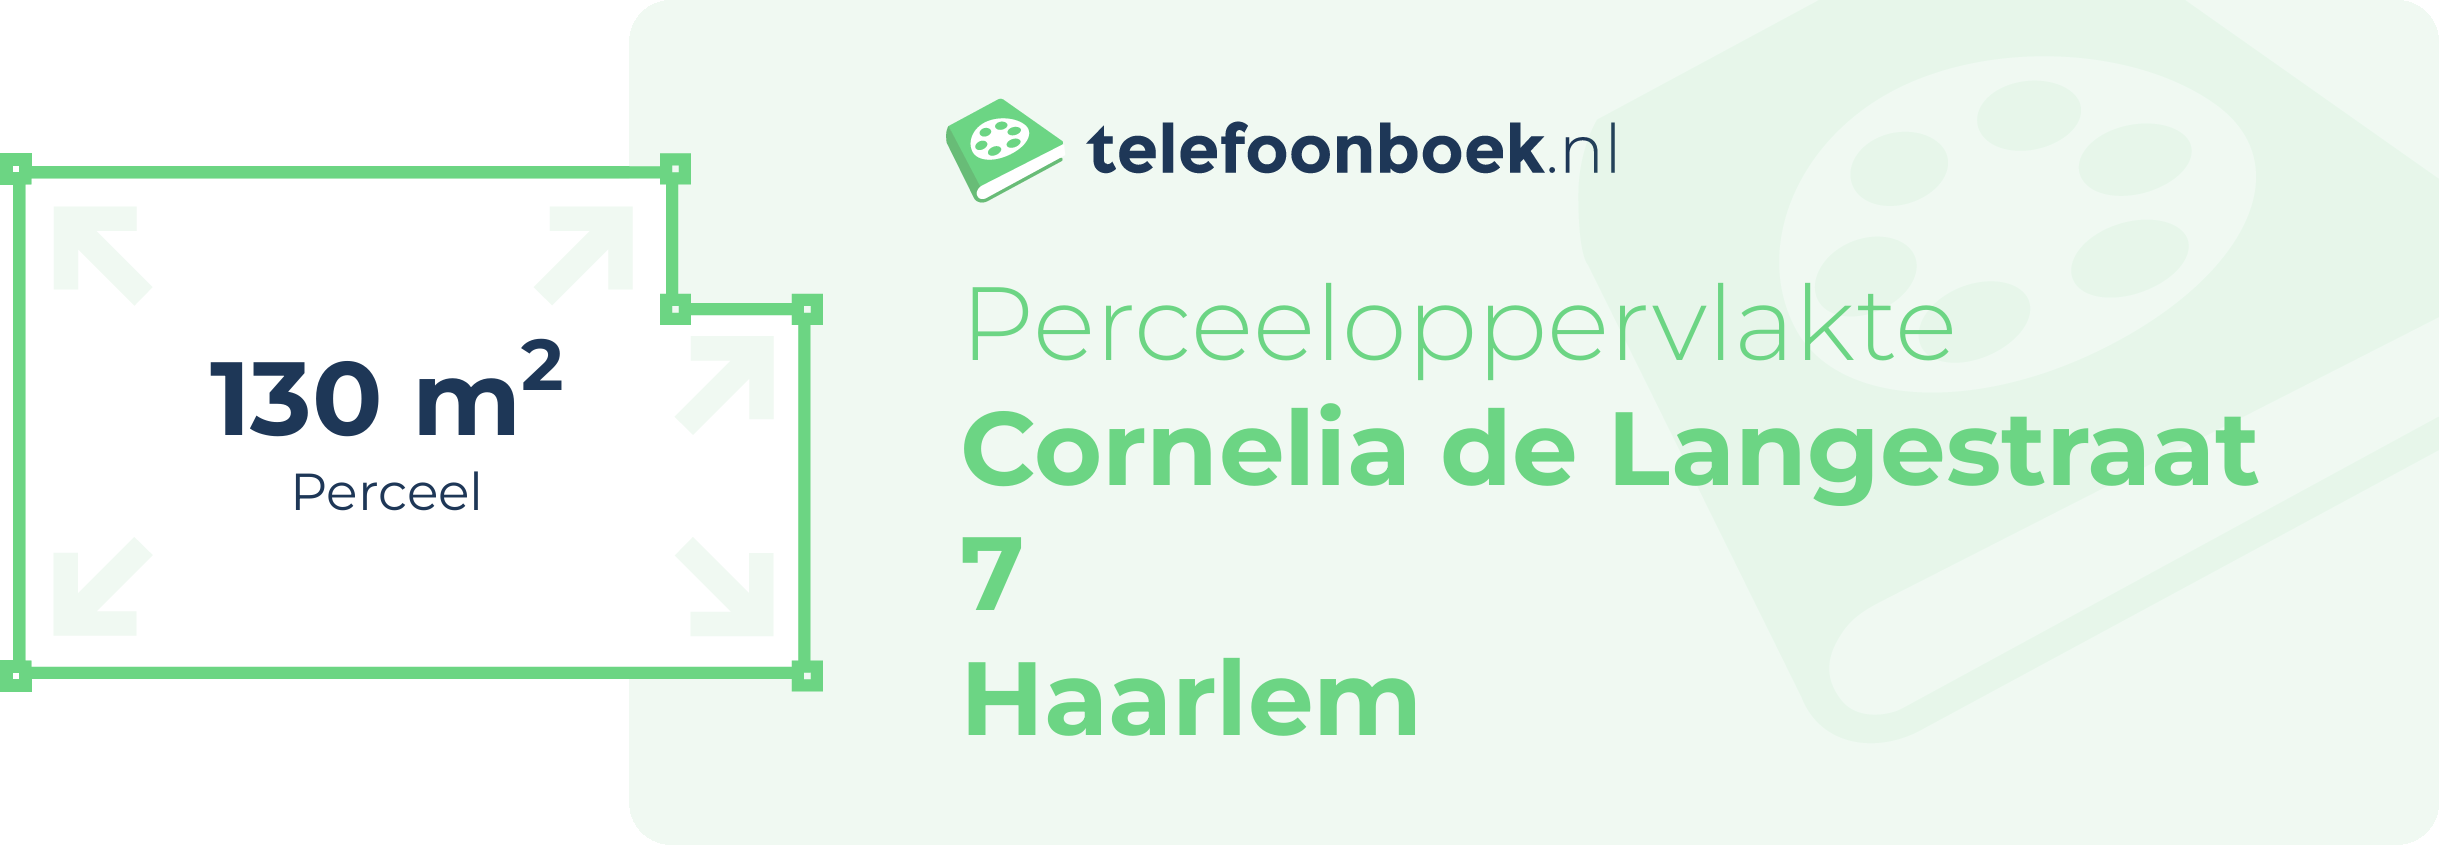 Perceeloppervlakte Cornelia De Langestraat 7 Haarlem